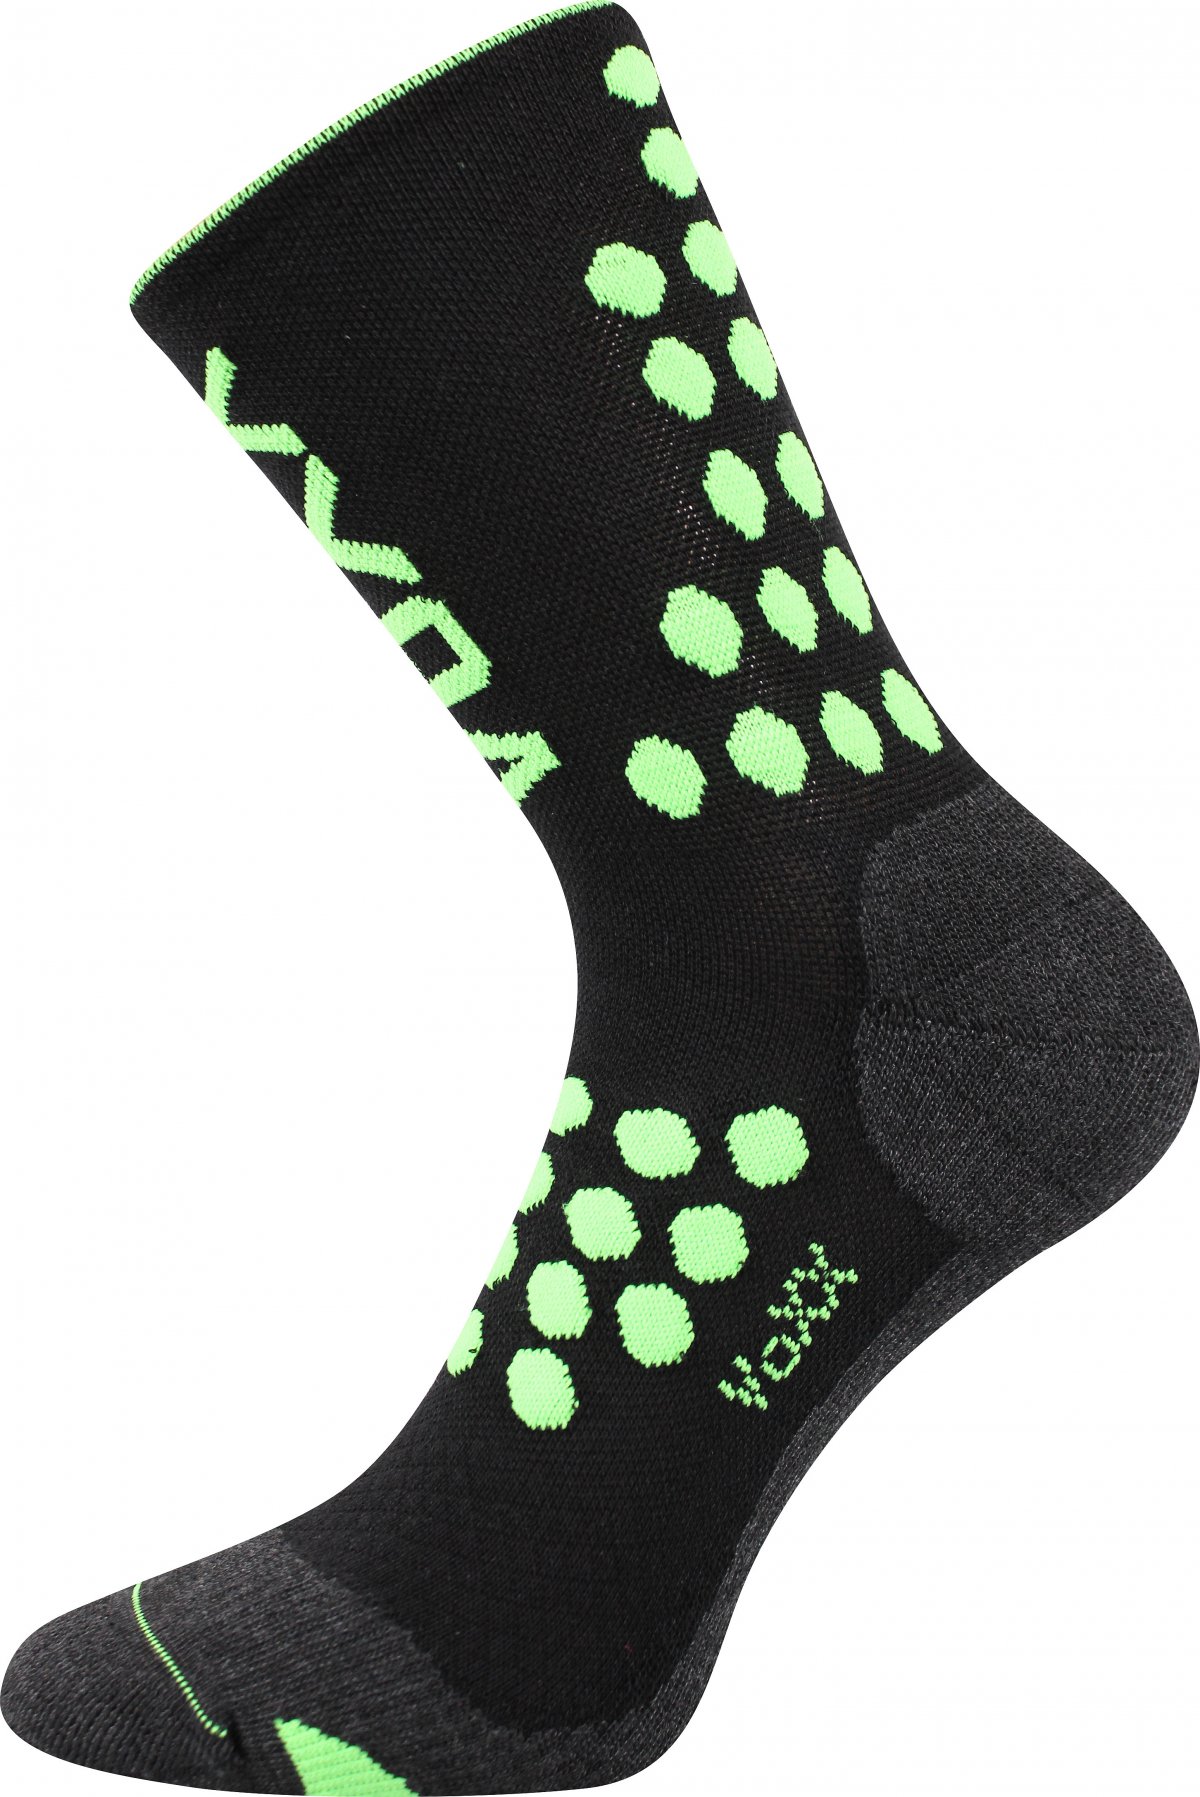 Kompresní ponožky Finish - černé - 1 pár - VoXX - velikost 43-46